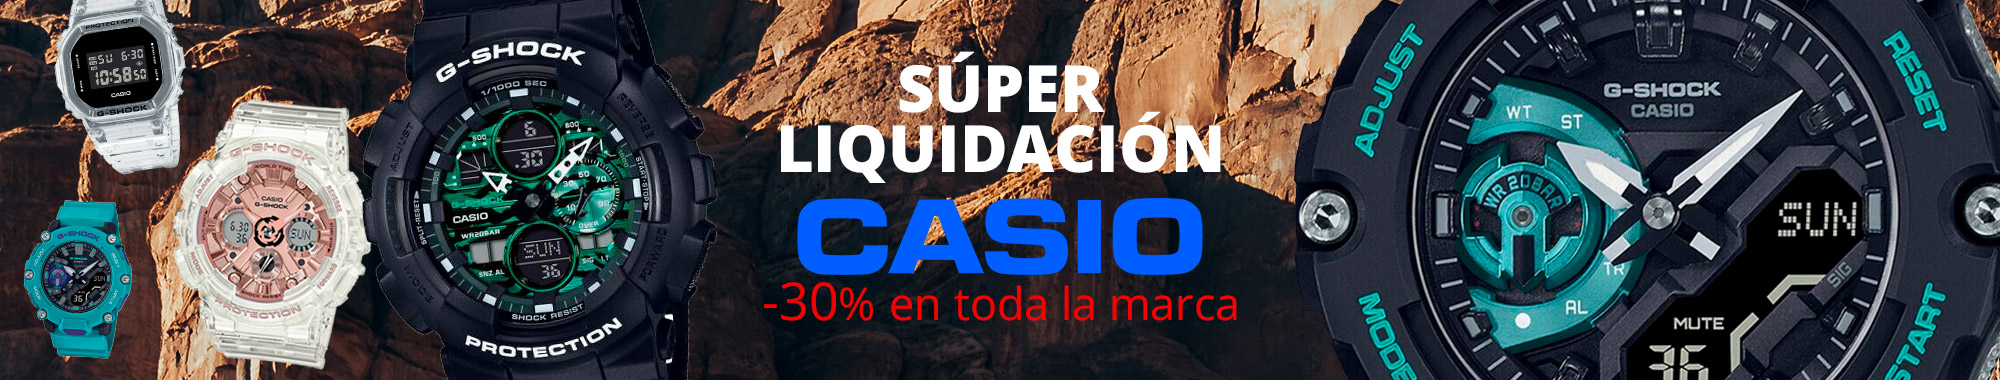 -30% Casio